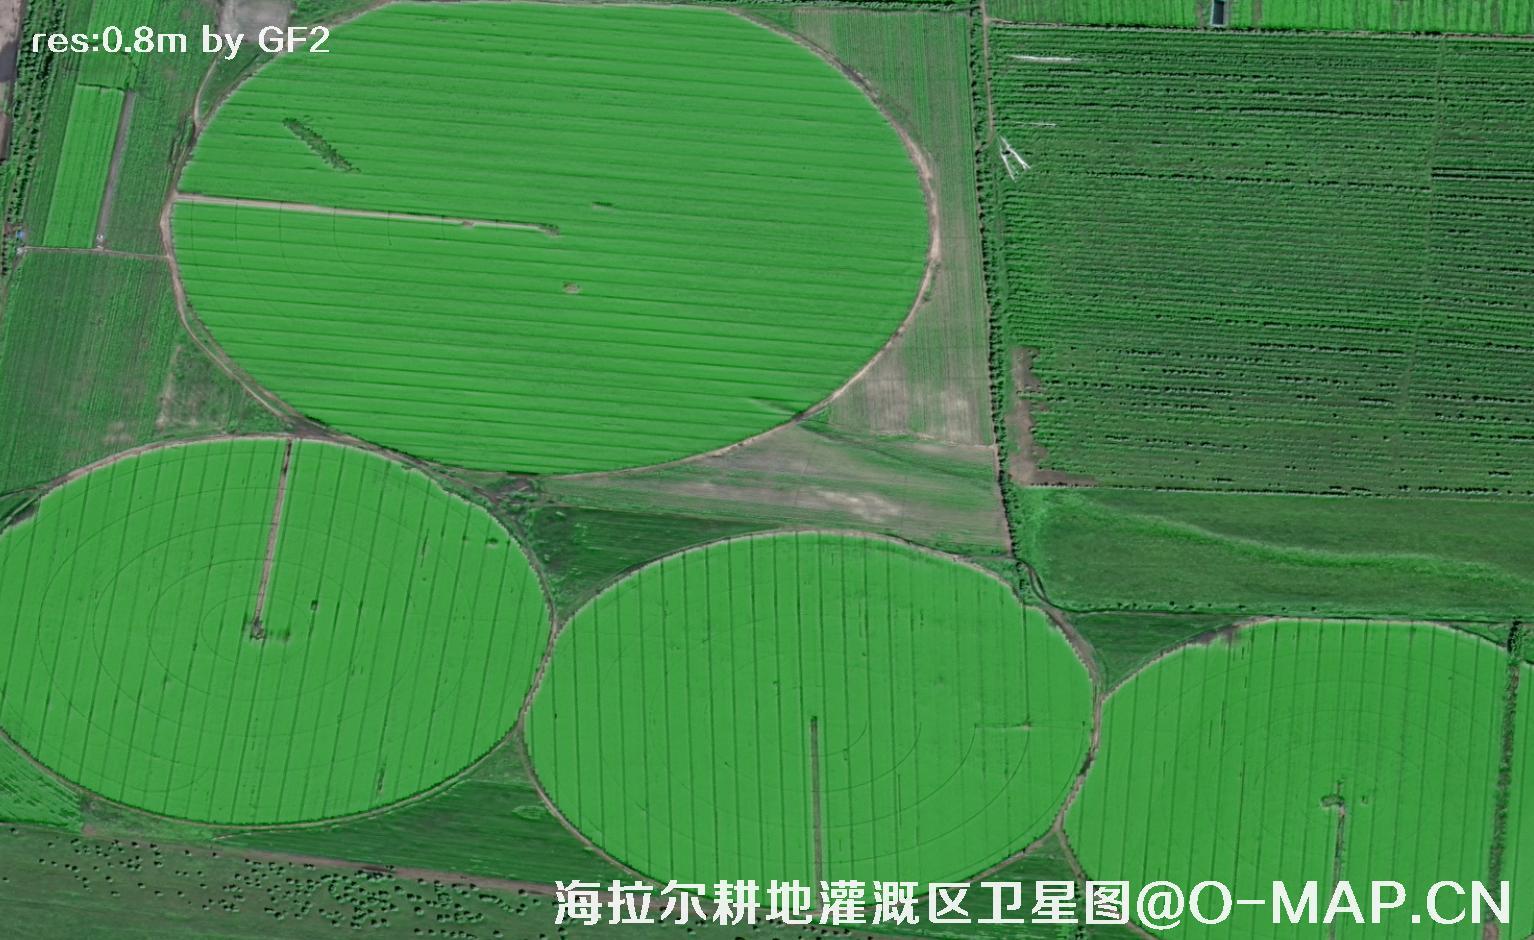 内蒙古呼伦贝尔海拉尔耕地灌溉区域2021卫星图